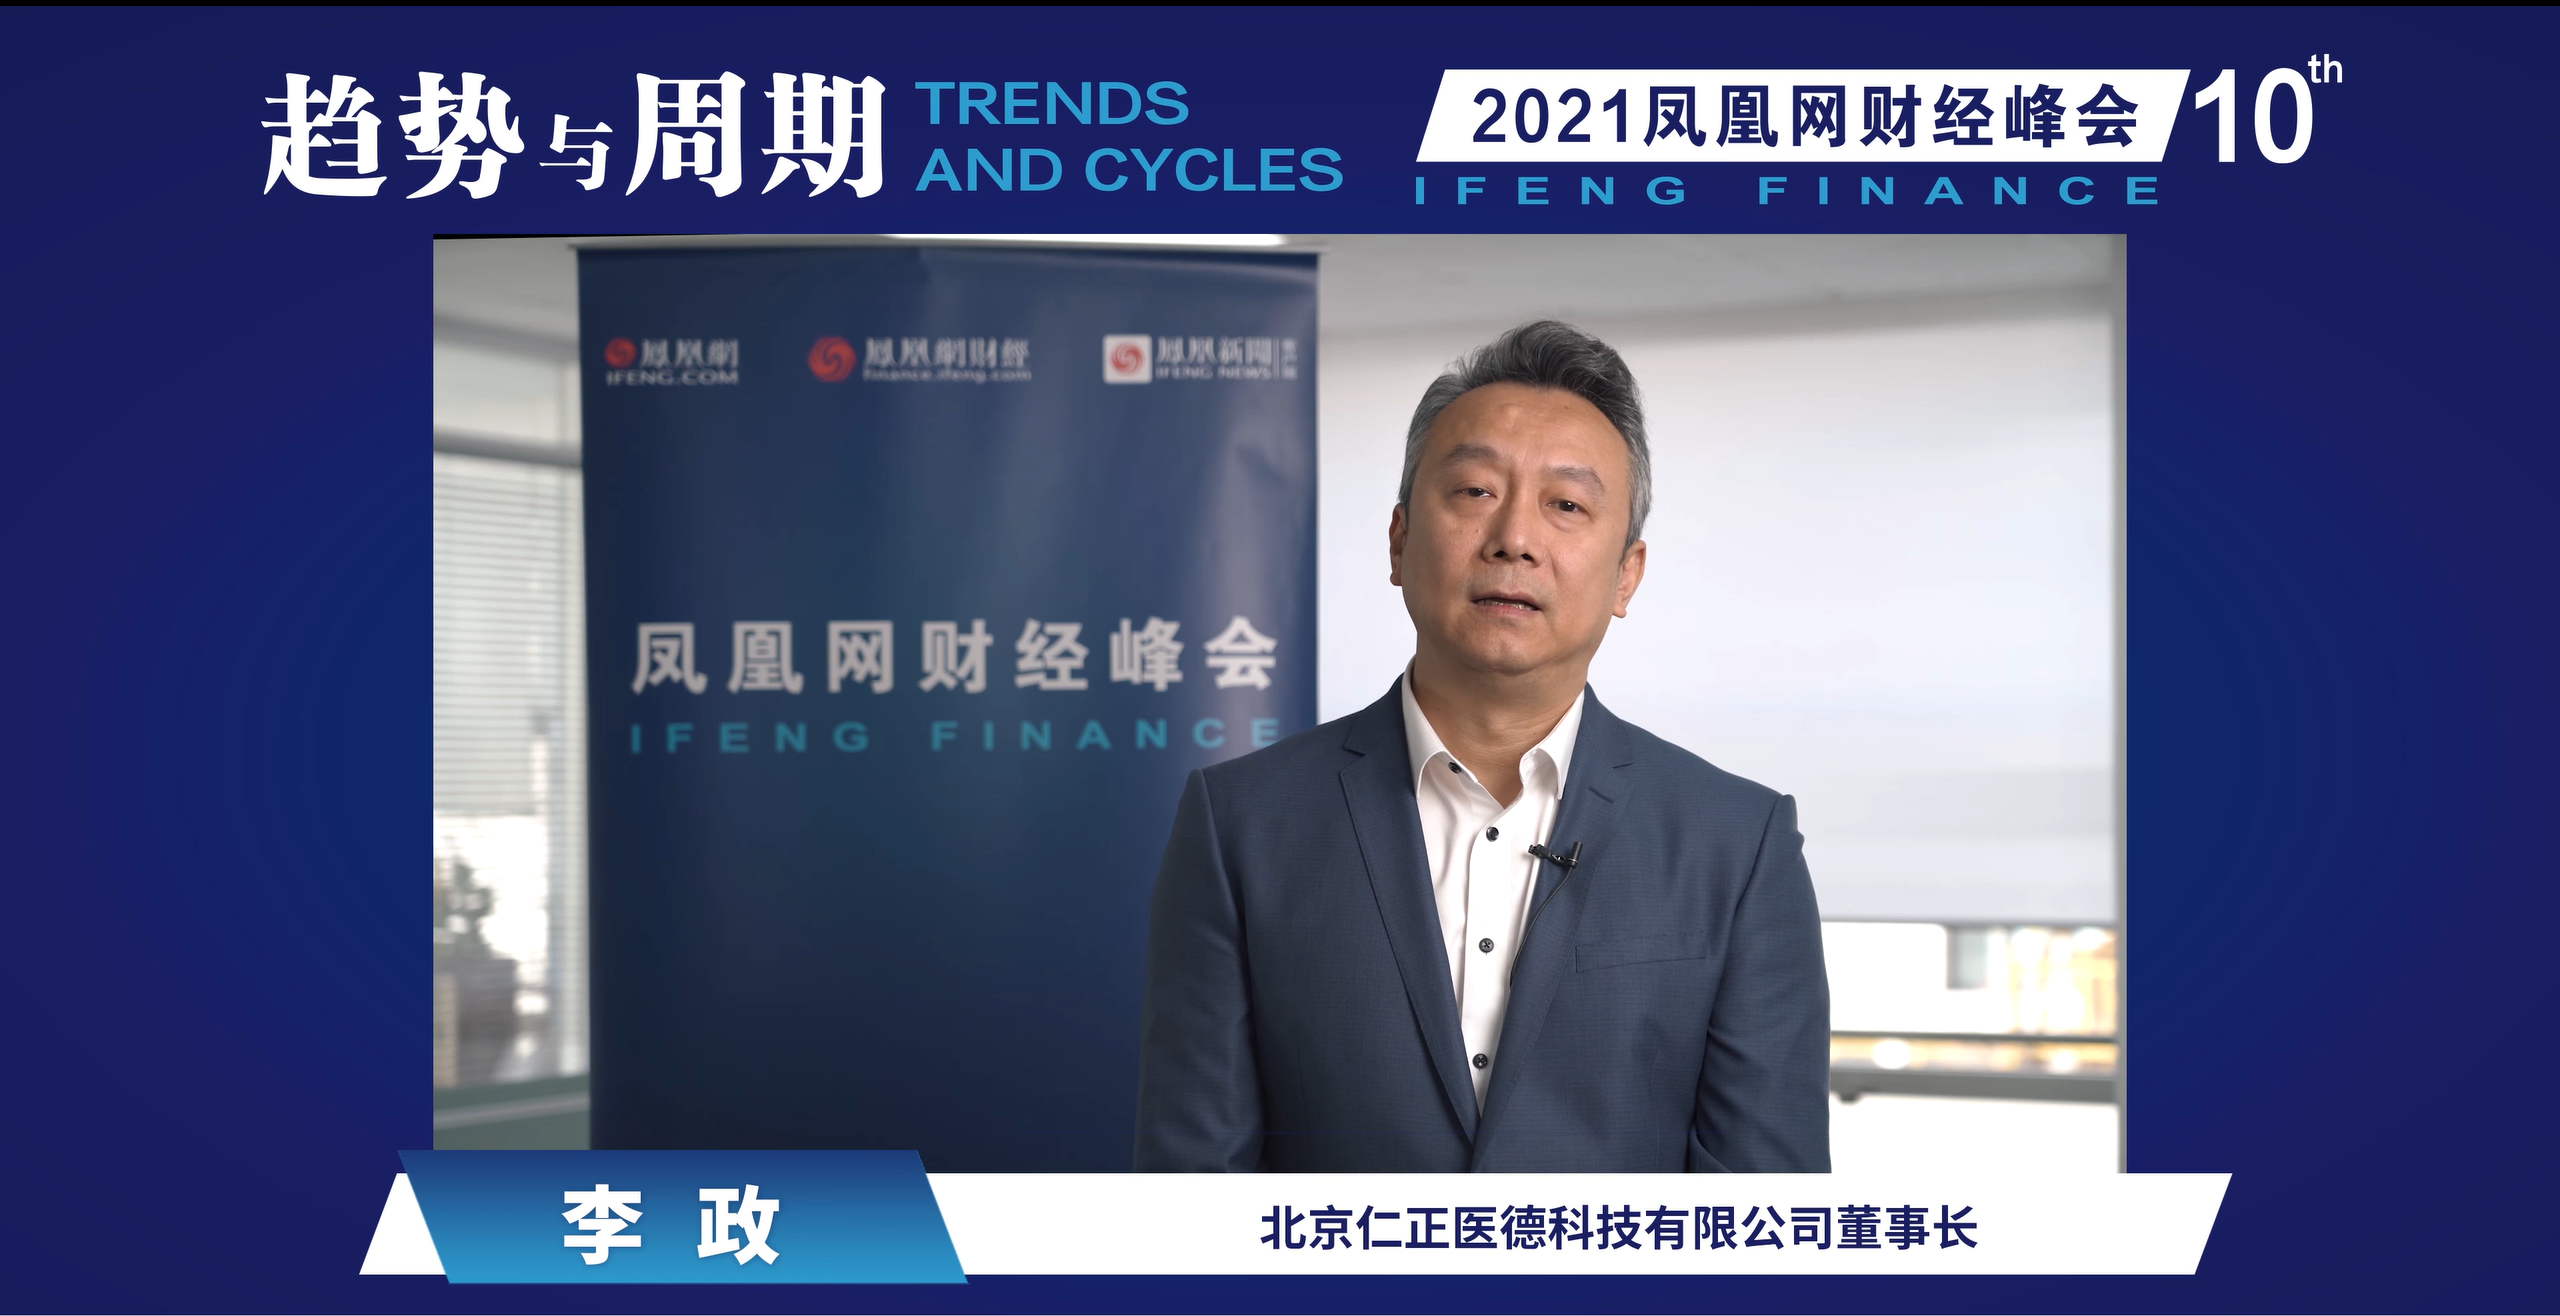 李政：2021年是中国慢病管理的元年，大健康产业或迎来10年红利期